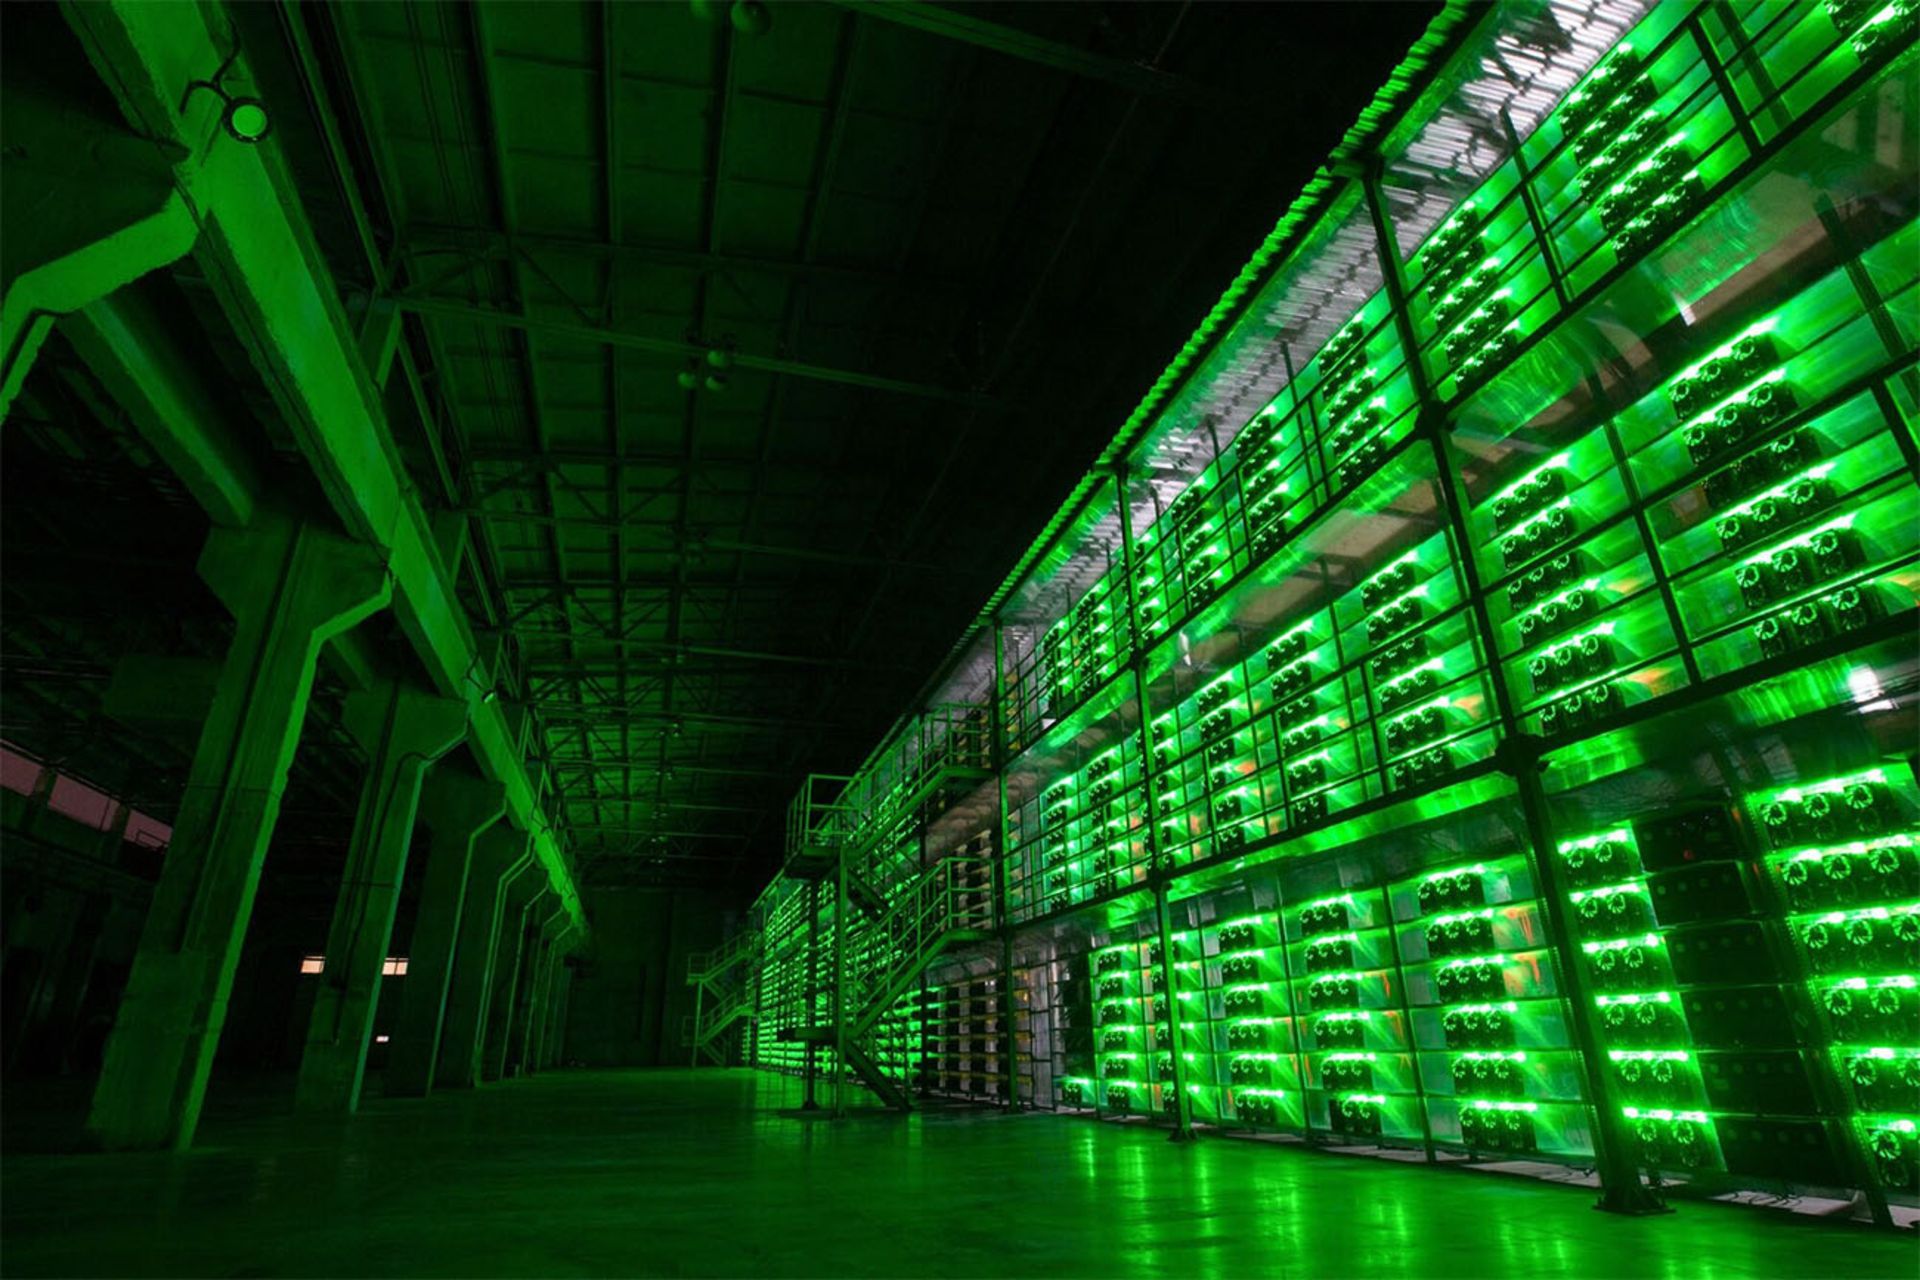 مزرعه استخراج بیت کوین با فضای رنگی سبز